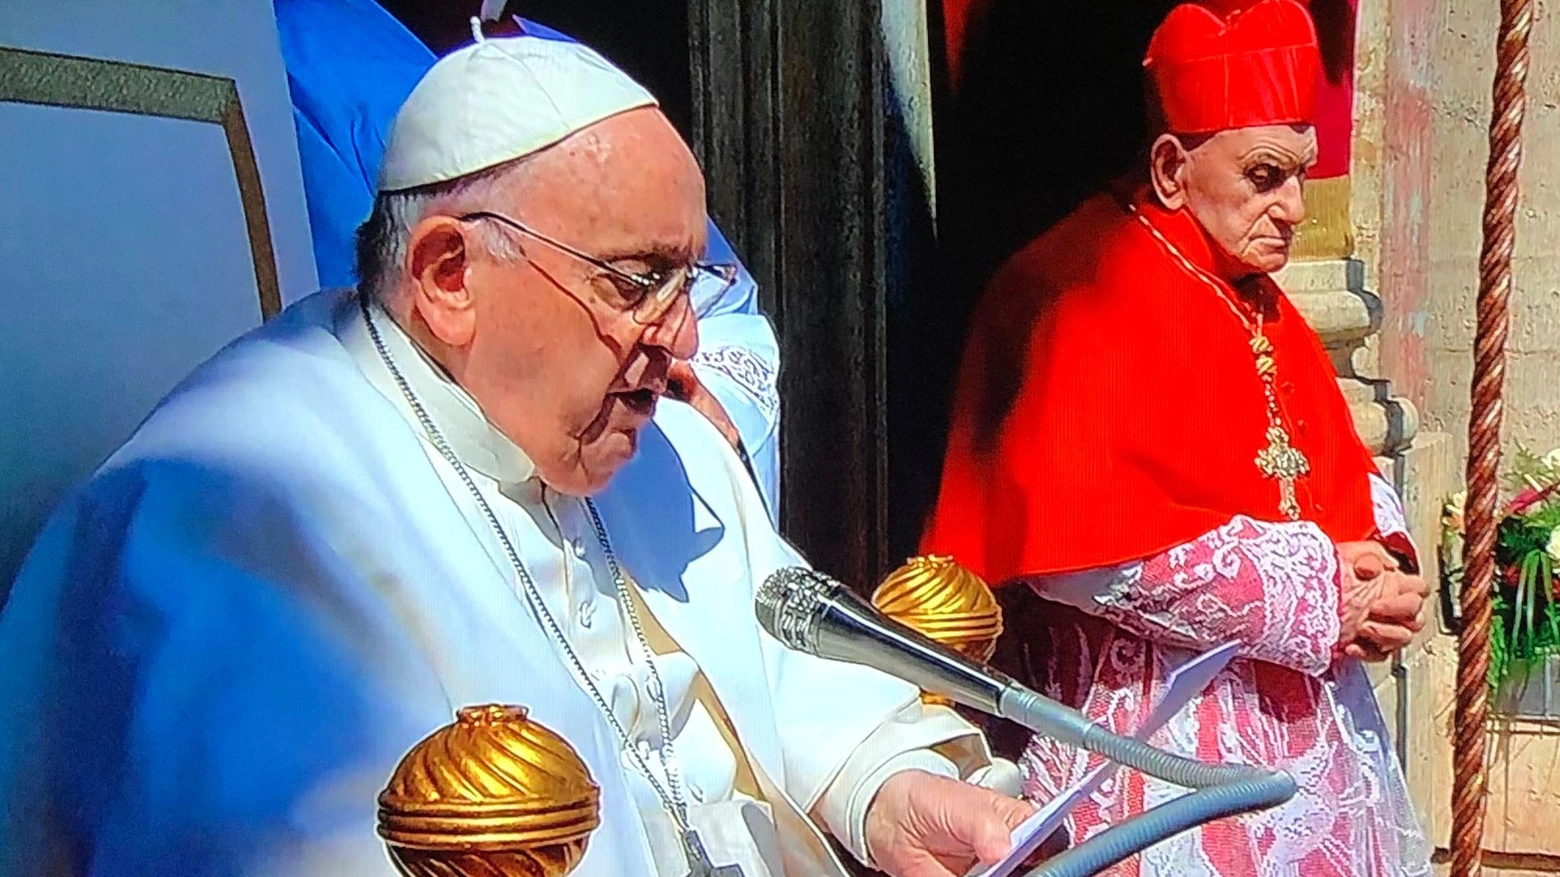 Simoni accanto al Papa  "Una grande grazia"  La commozione  dell’anziano cardinale